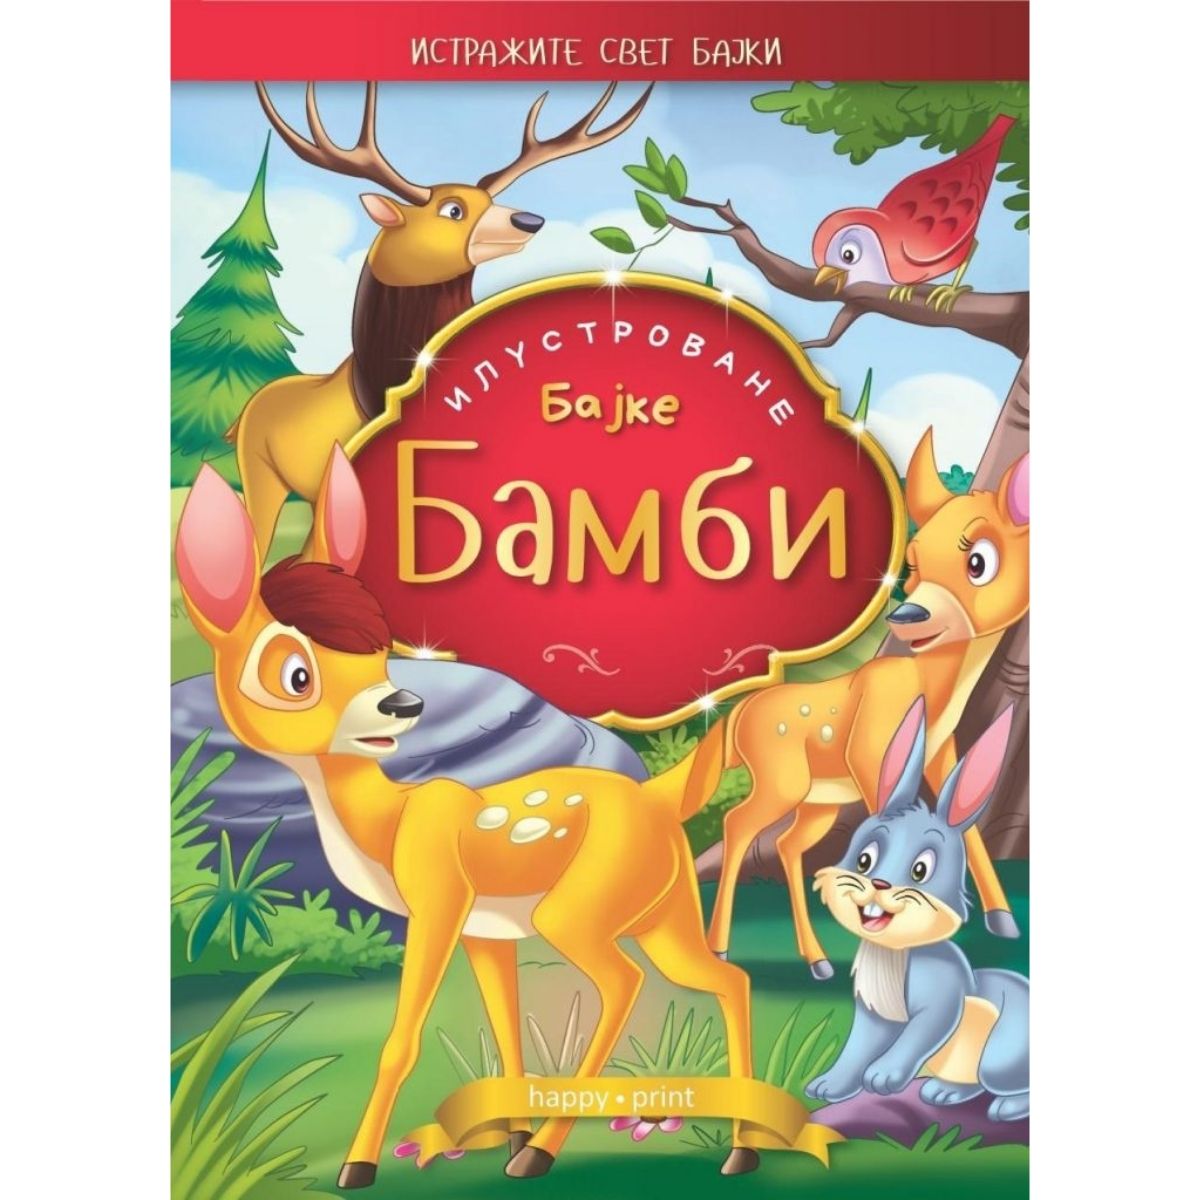 Bambi slikovnica - ilustrovane bajke 